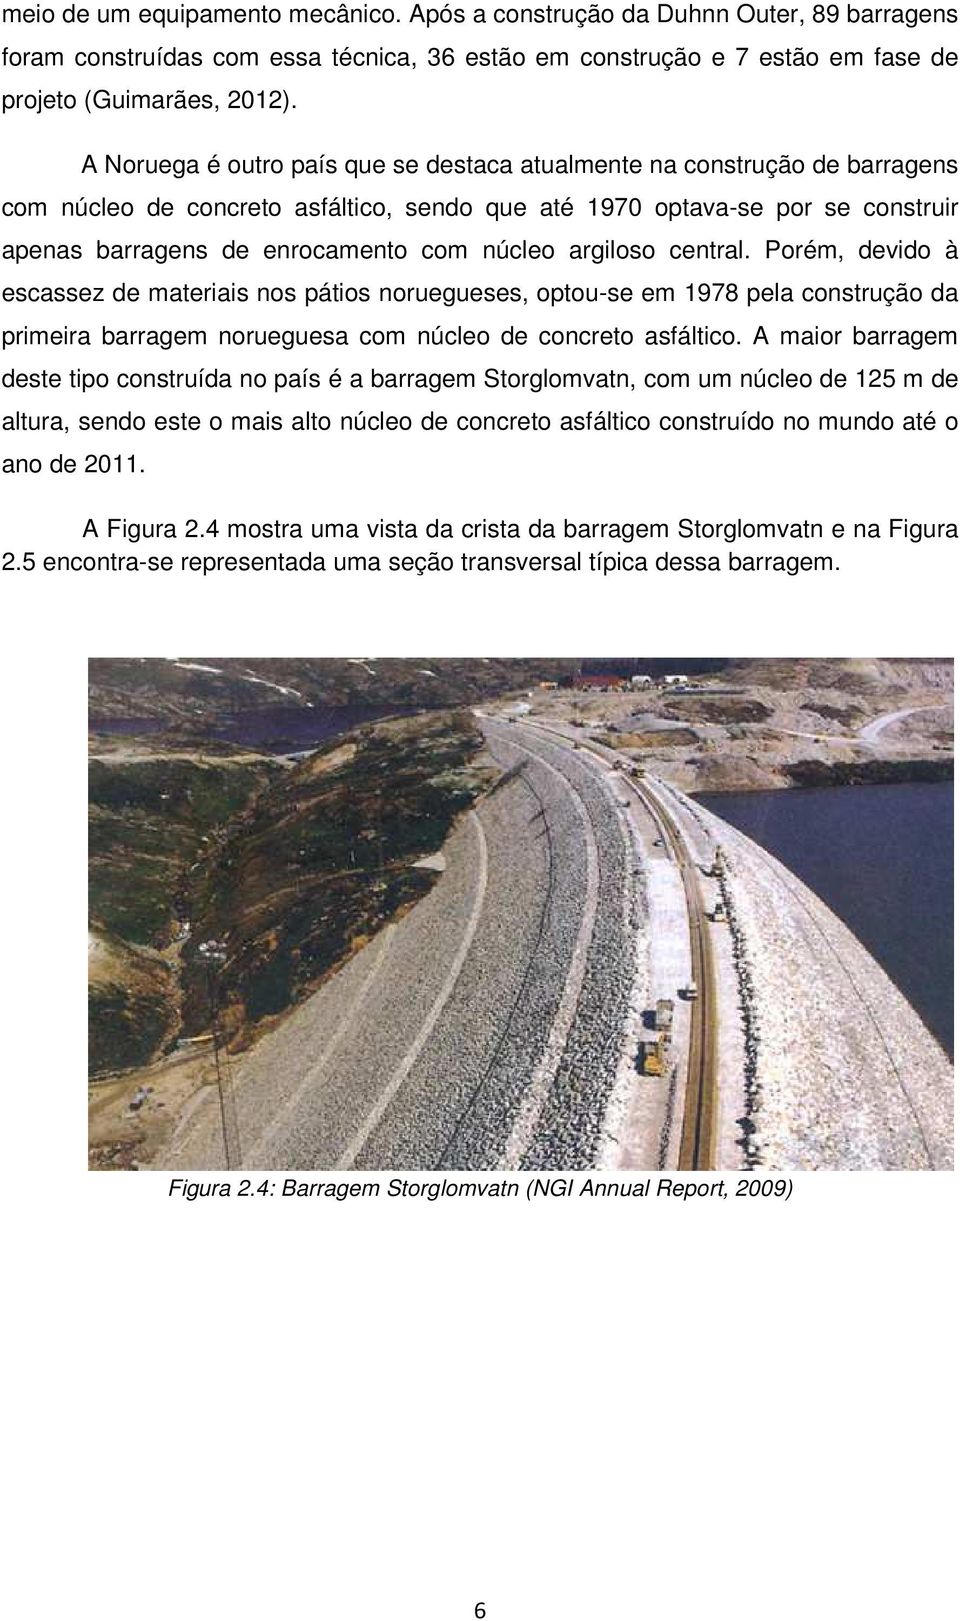 argiloso central. Porém, devido à escassez de materiais nos pátios noruegueses, optou-se em 1978 pela construção da primeira barragem norueguesa com núcleo de concreto asfáltico.